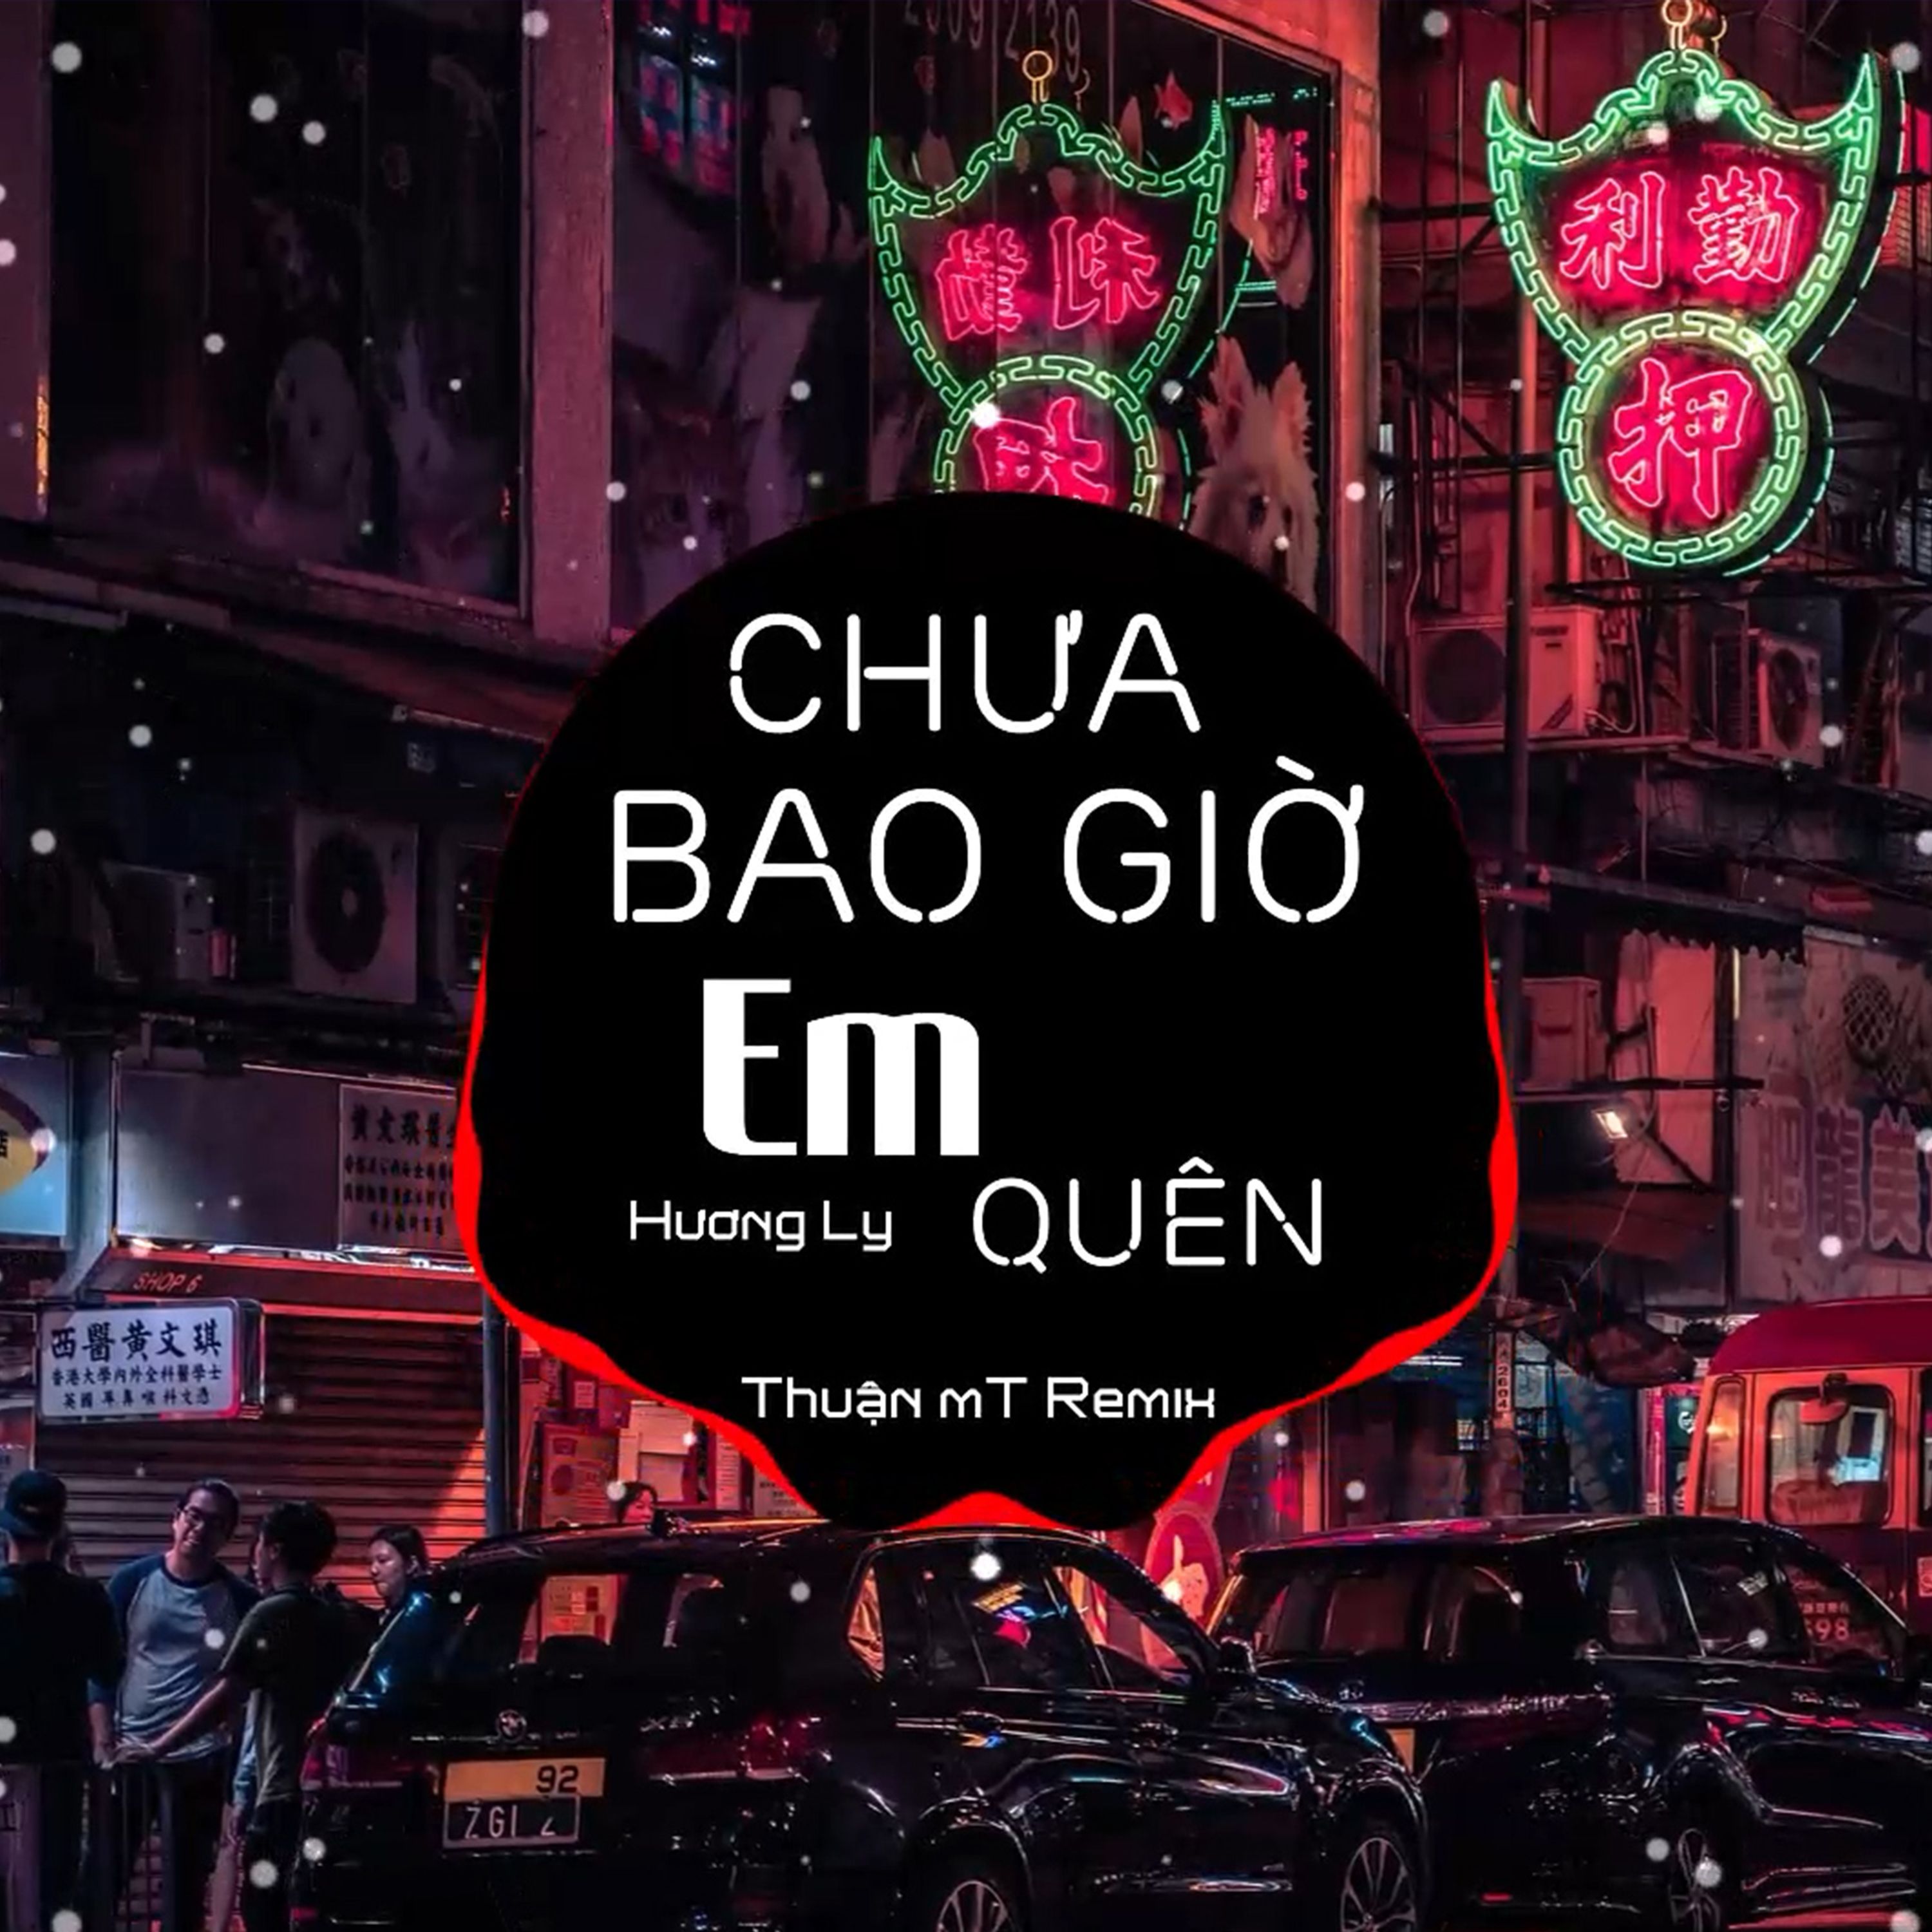 ดาวน์โหลด Chưa Bao Giờ Em Quên ( Thuận mT Remix ) Ver 2 - Hương Ly | Nhạc Nền Chill Phiêu Nhất TikTok  2021